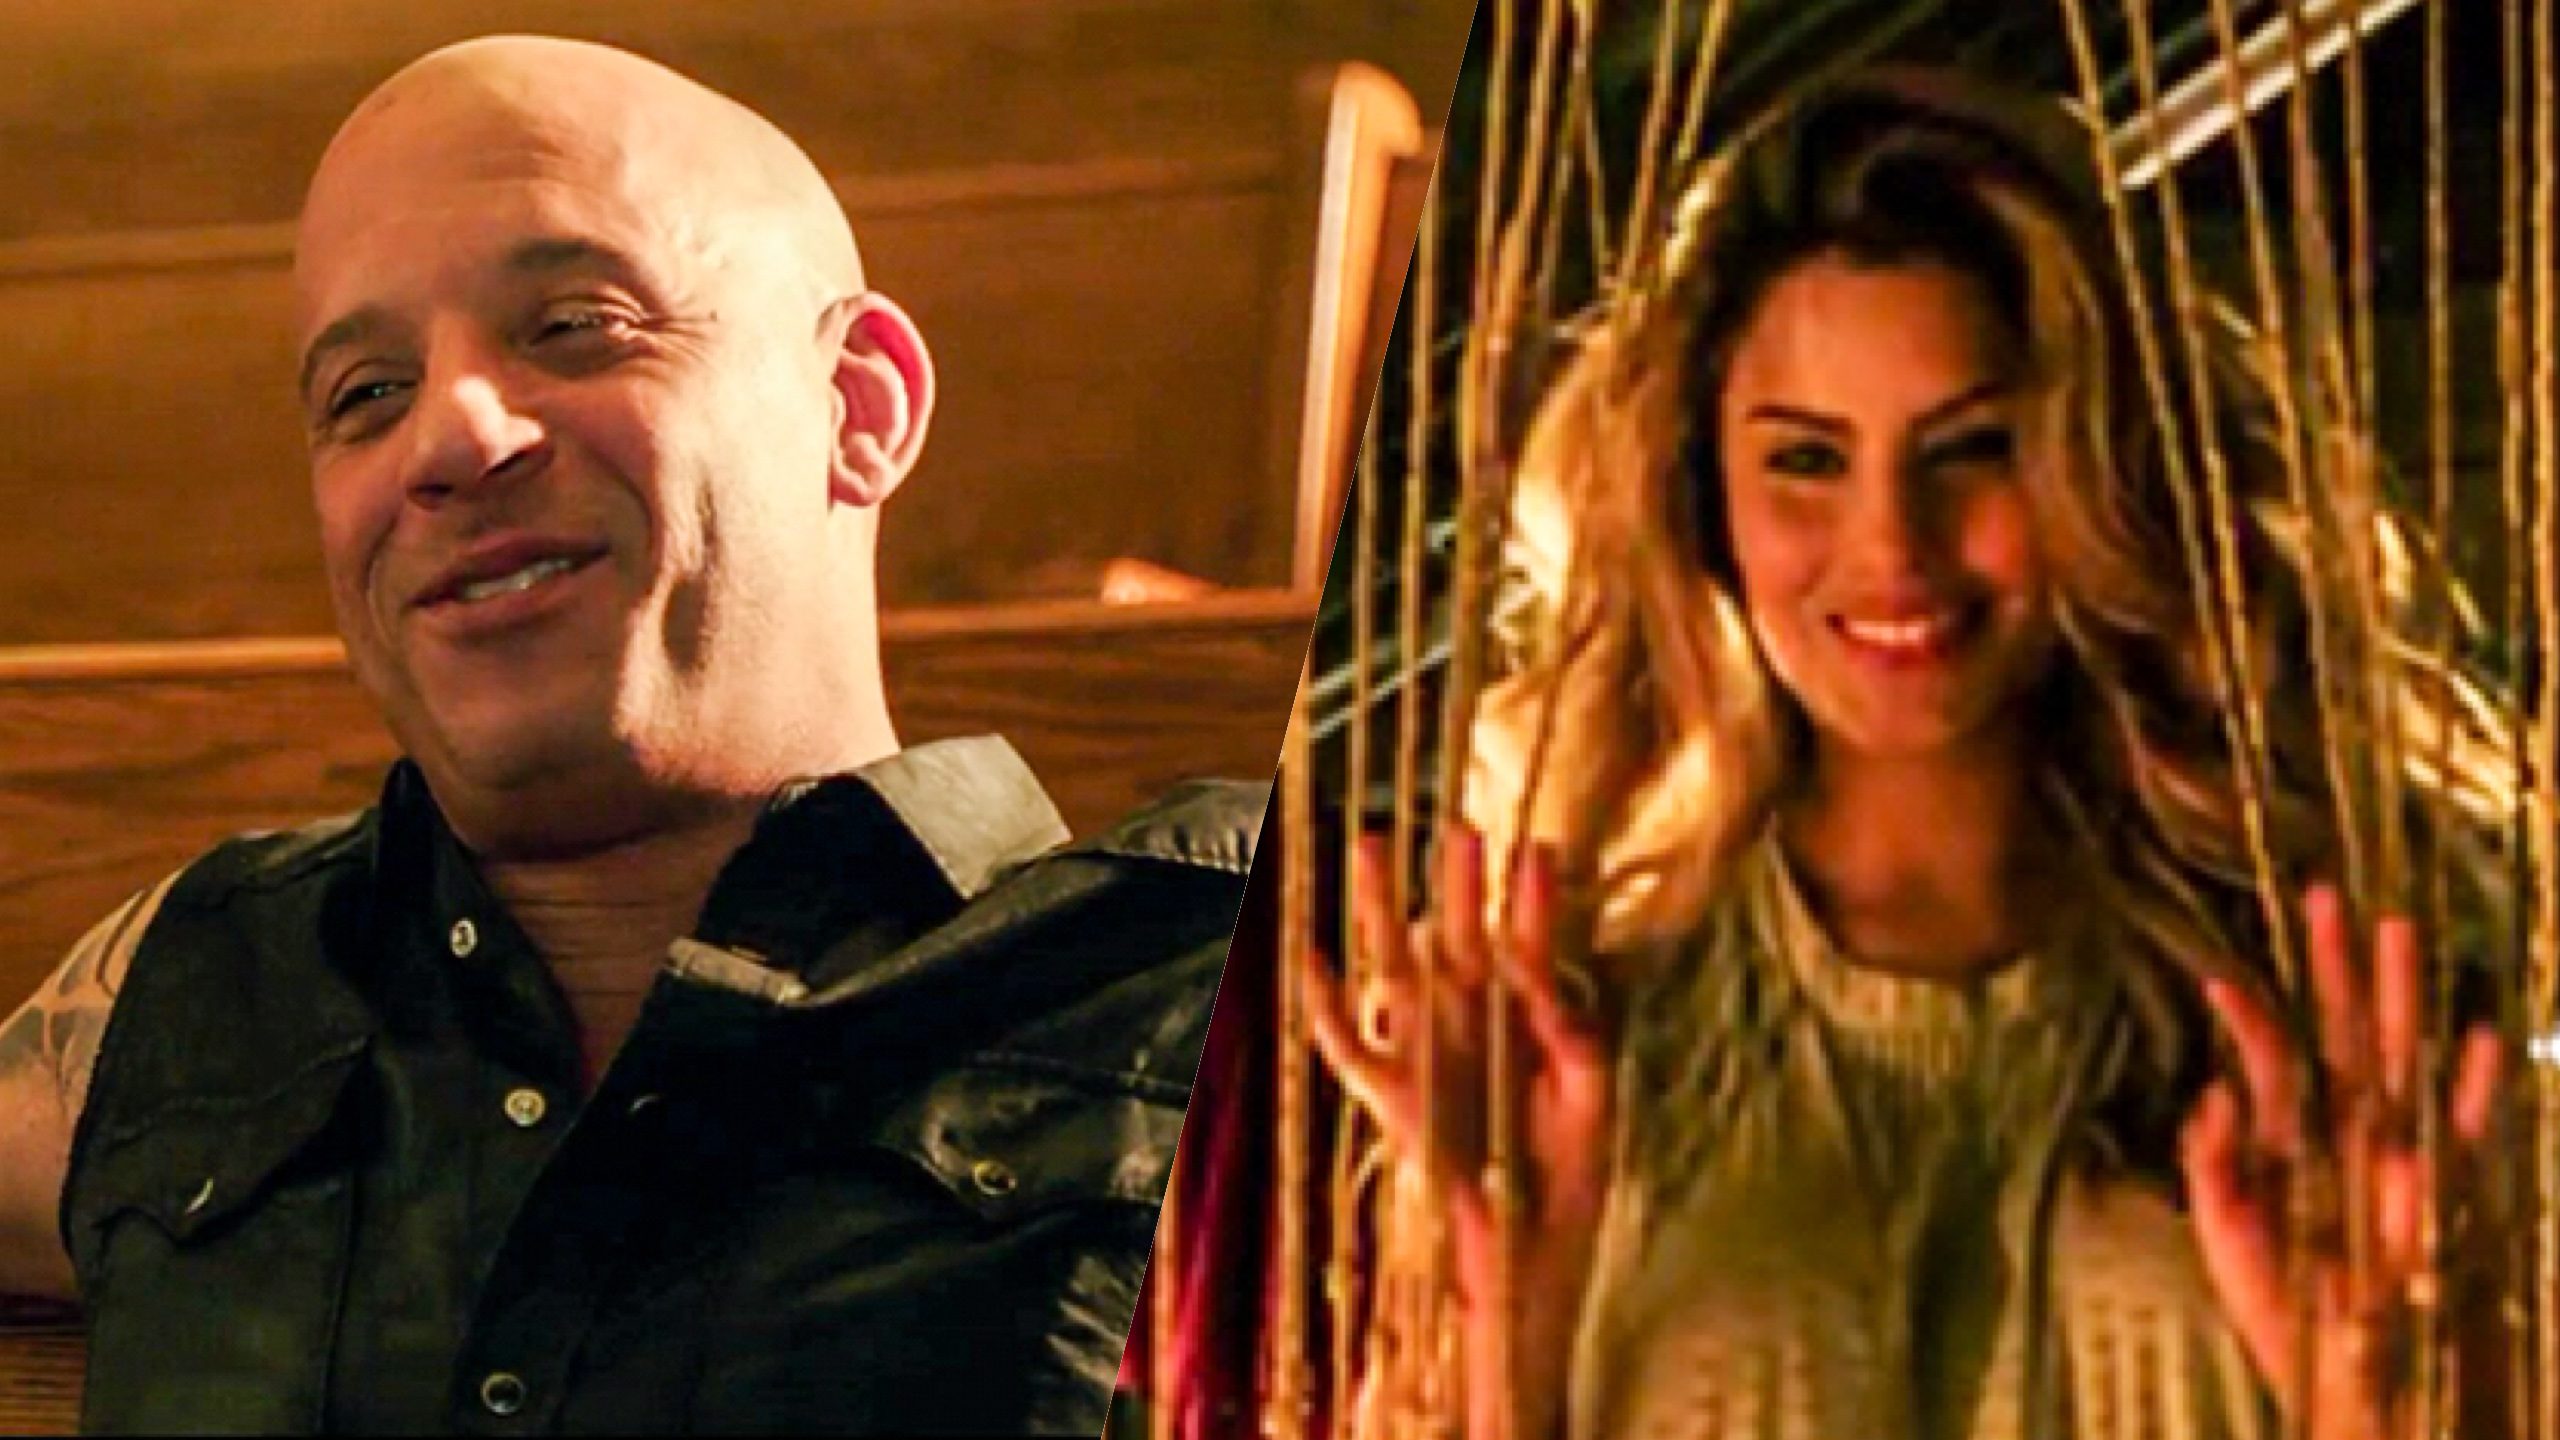 WATCH: Vin Diesel’s return, Miss Colombia Ariadna Gutierrez in ‘xXx: Return of Xander Cage’ trailer